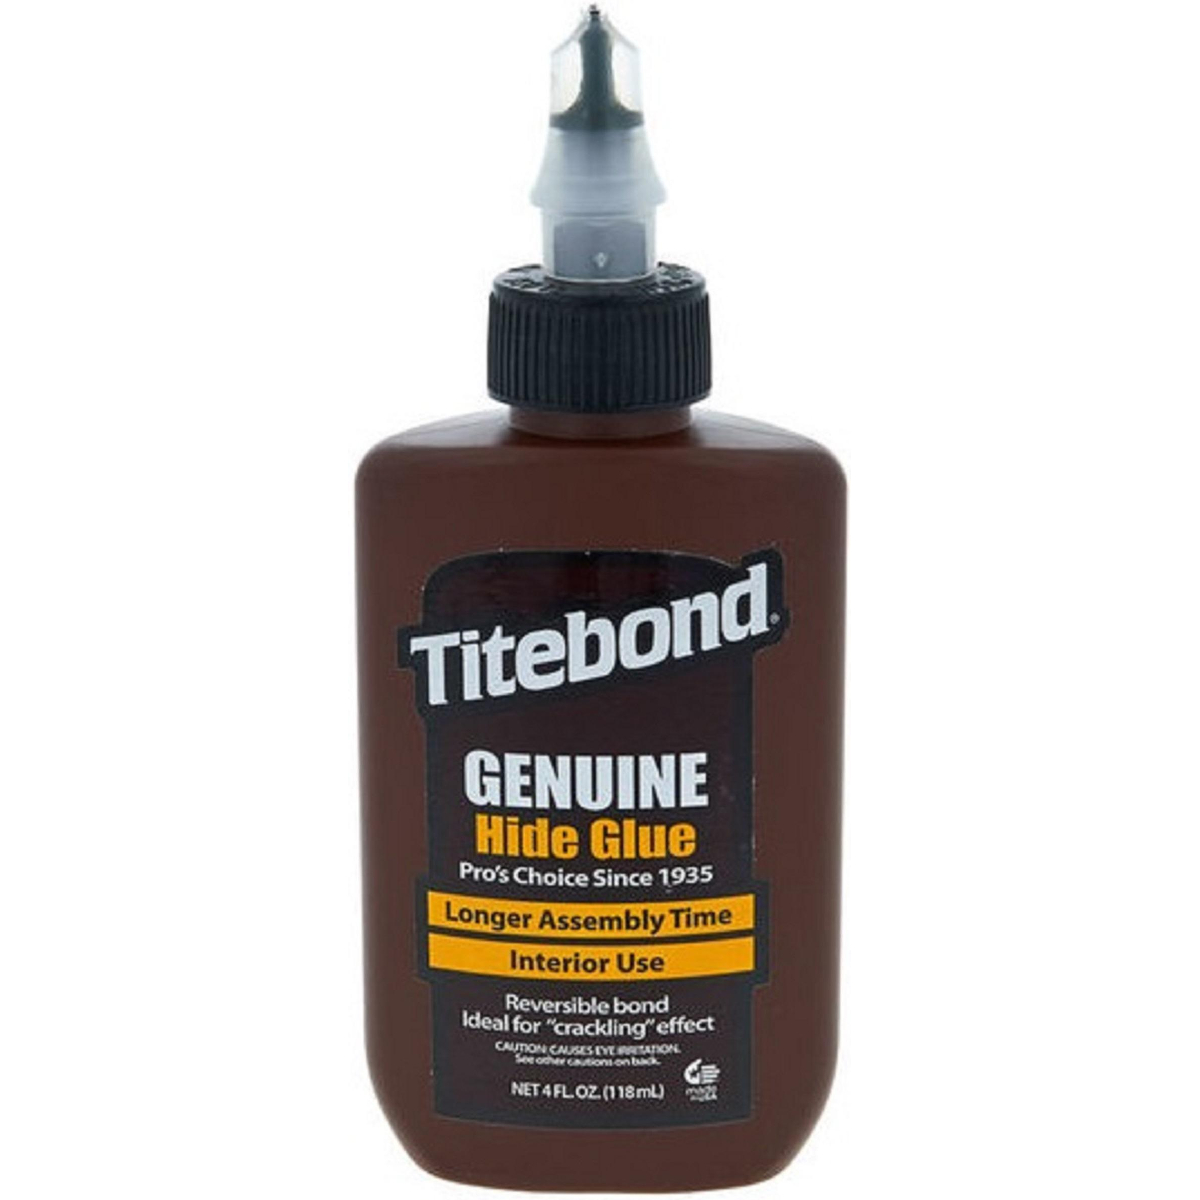 Купить клей тайтбонд. Клей столярный IRFIX Wood Glue d3 500гр. Titebond Liquid Hide Glue 5013. Клей Titebond Liquid Hide Glue. Titebond клей для дерева 237 мл.